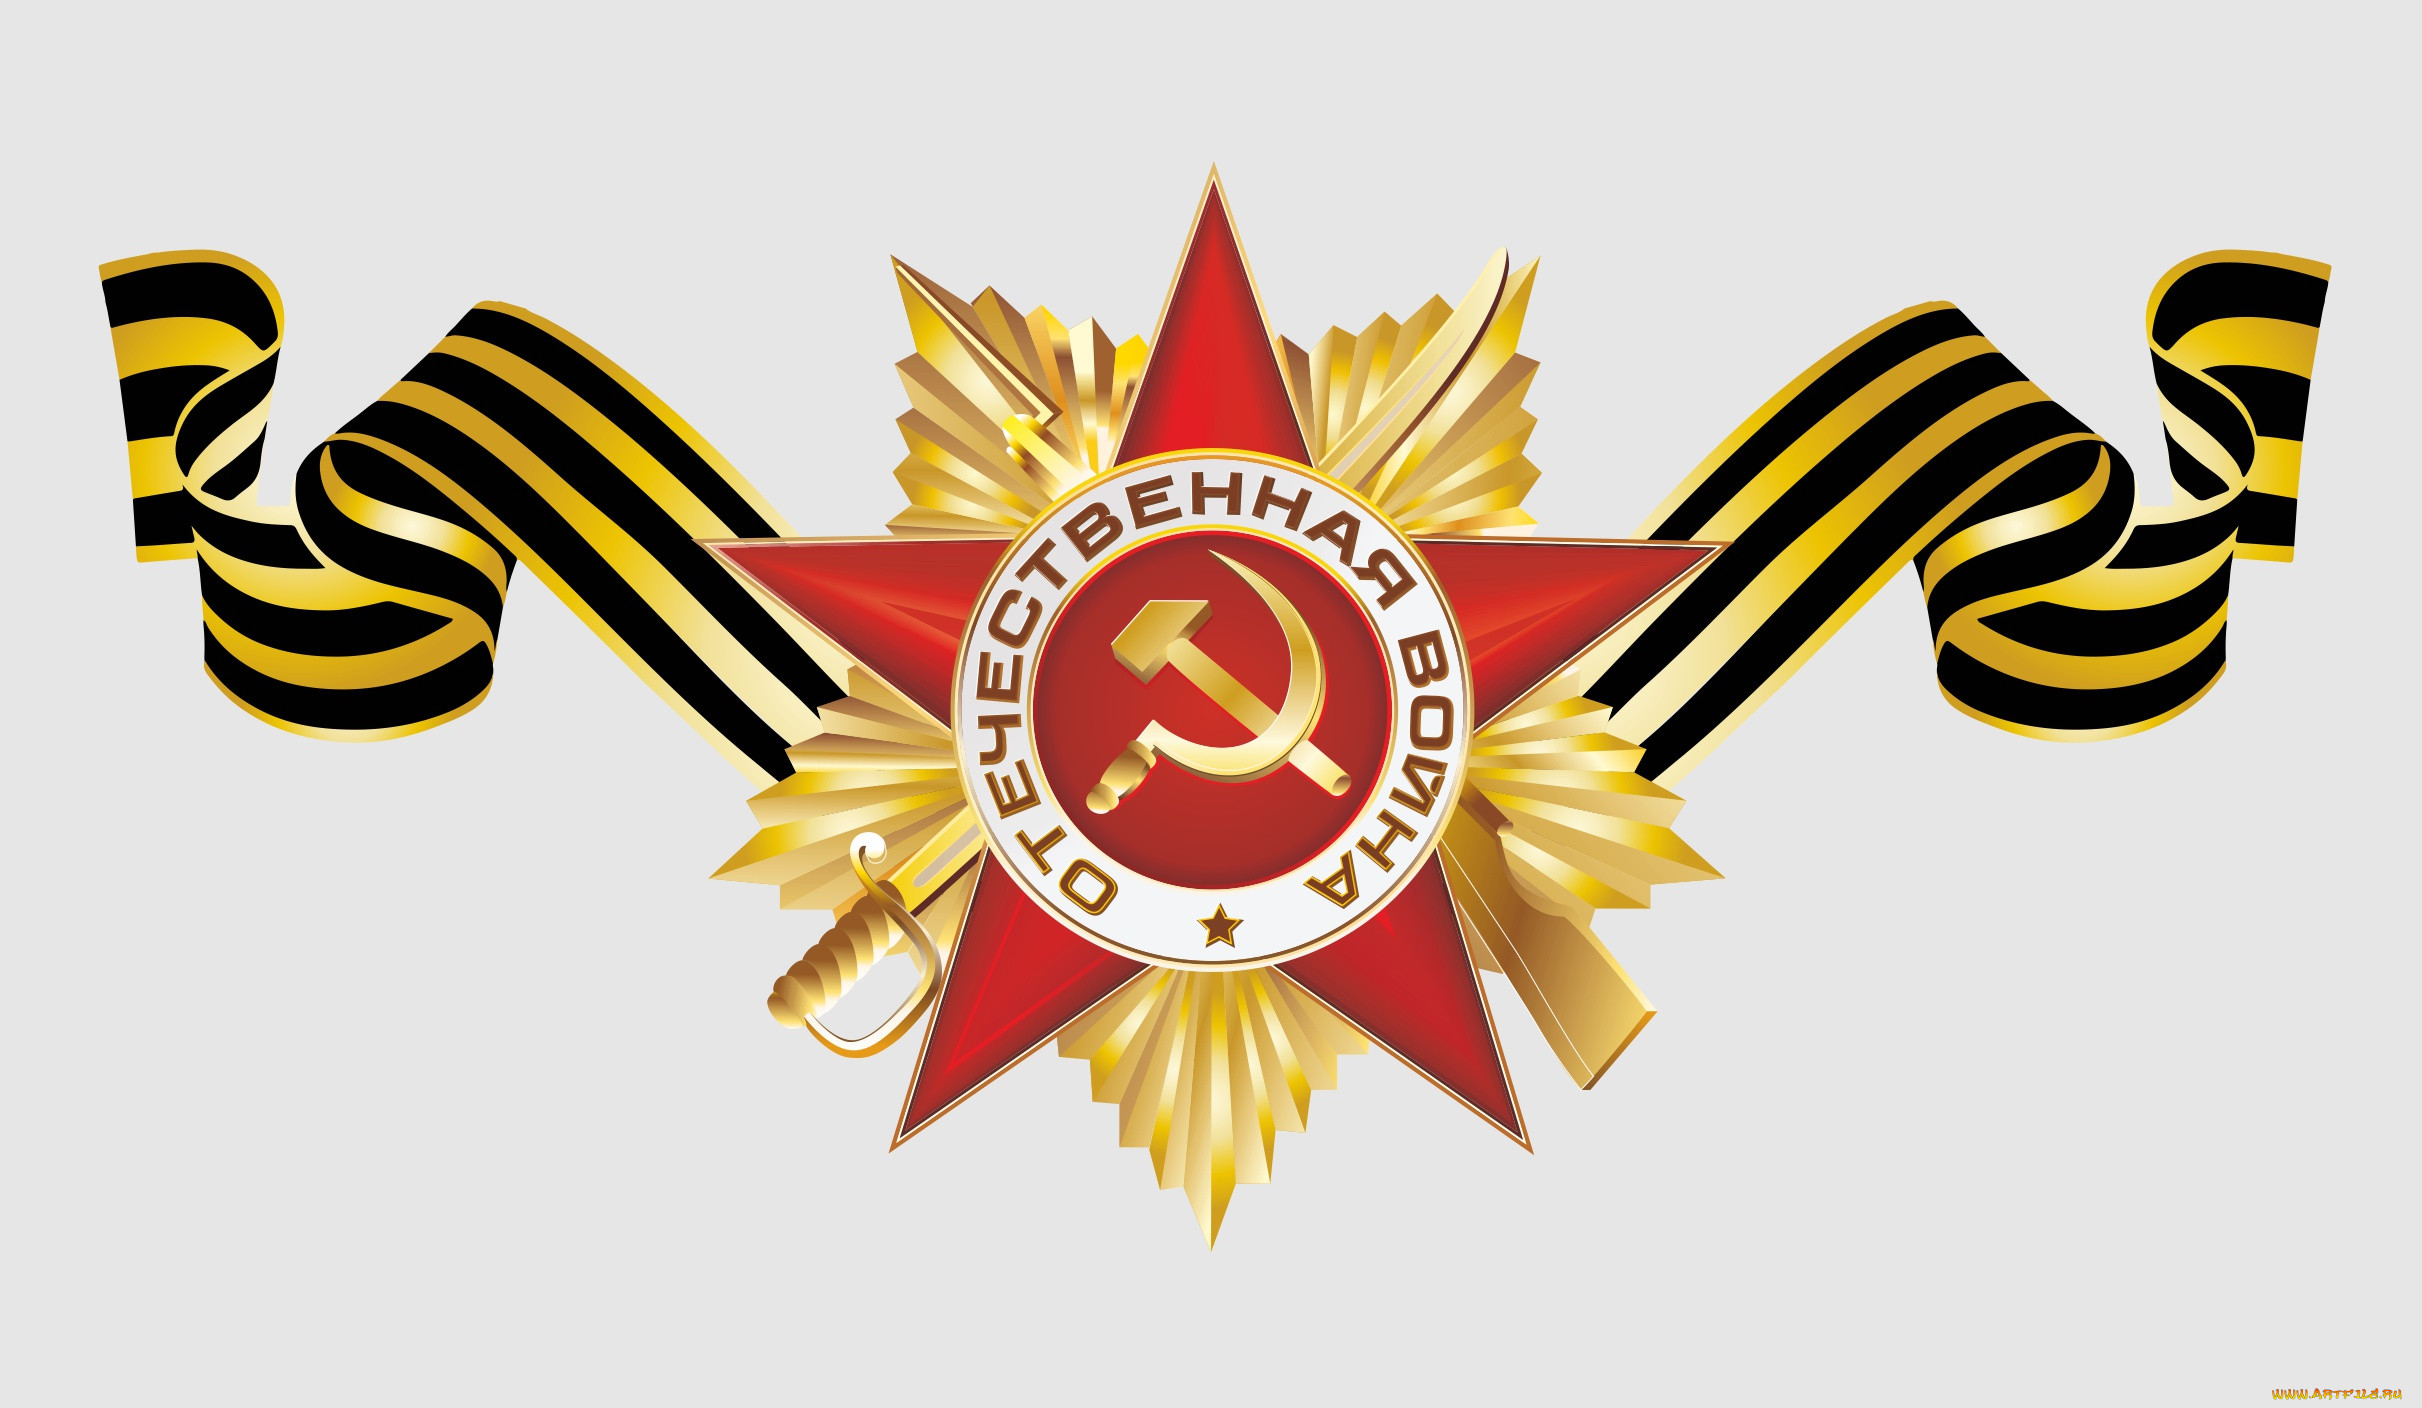 Георгиевская ленточка с орденом Отечественной войны